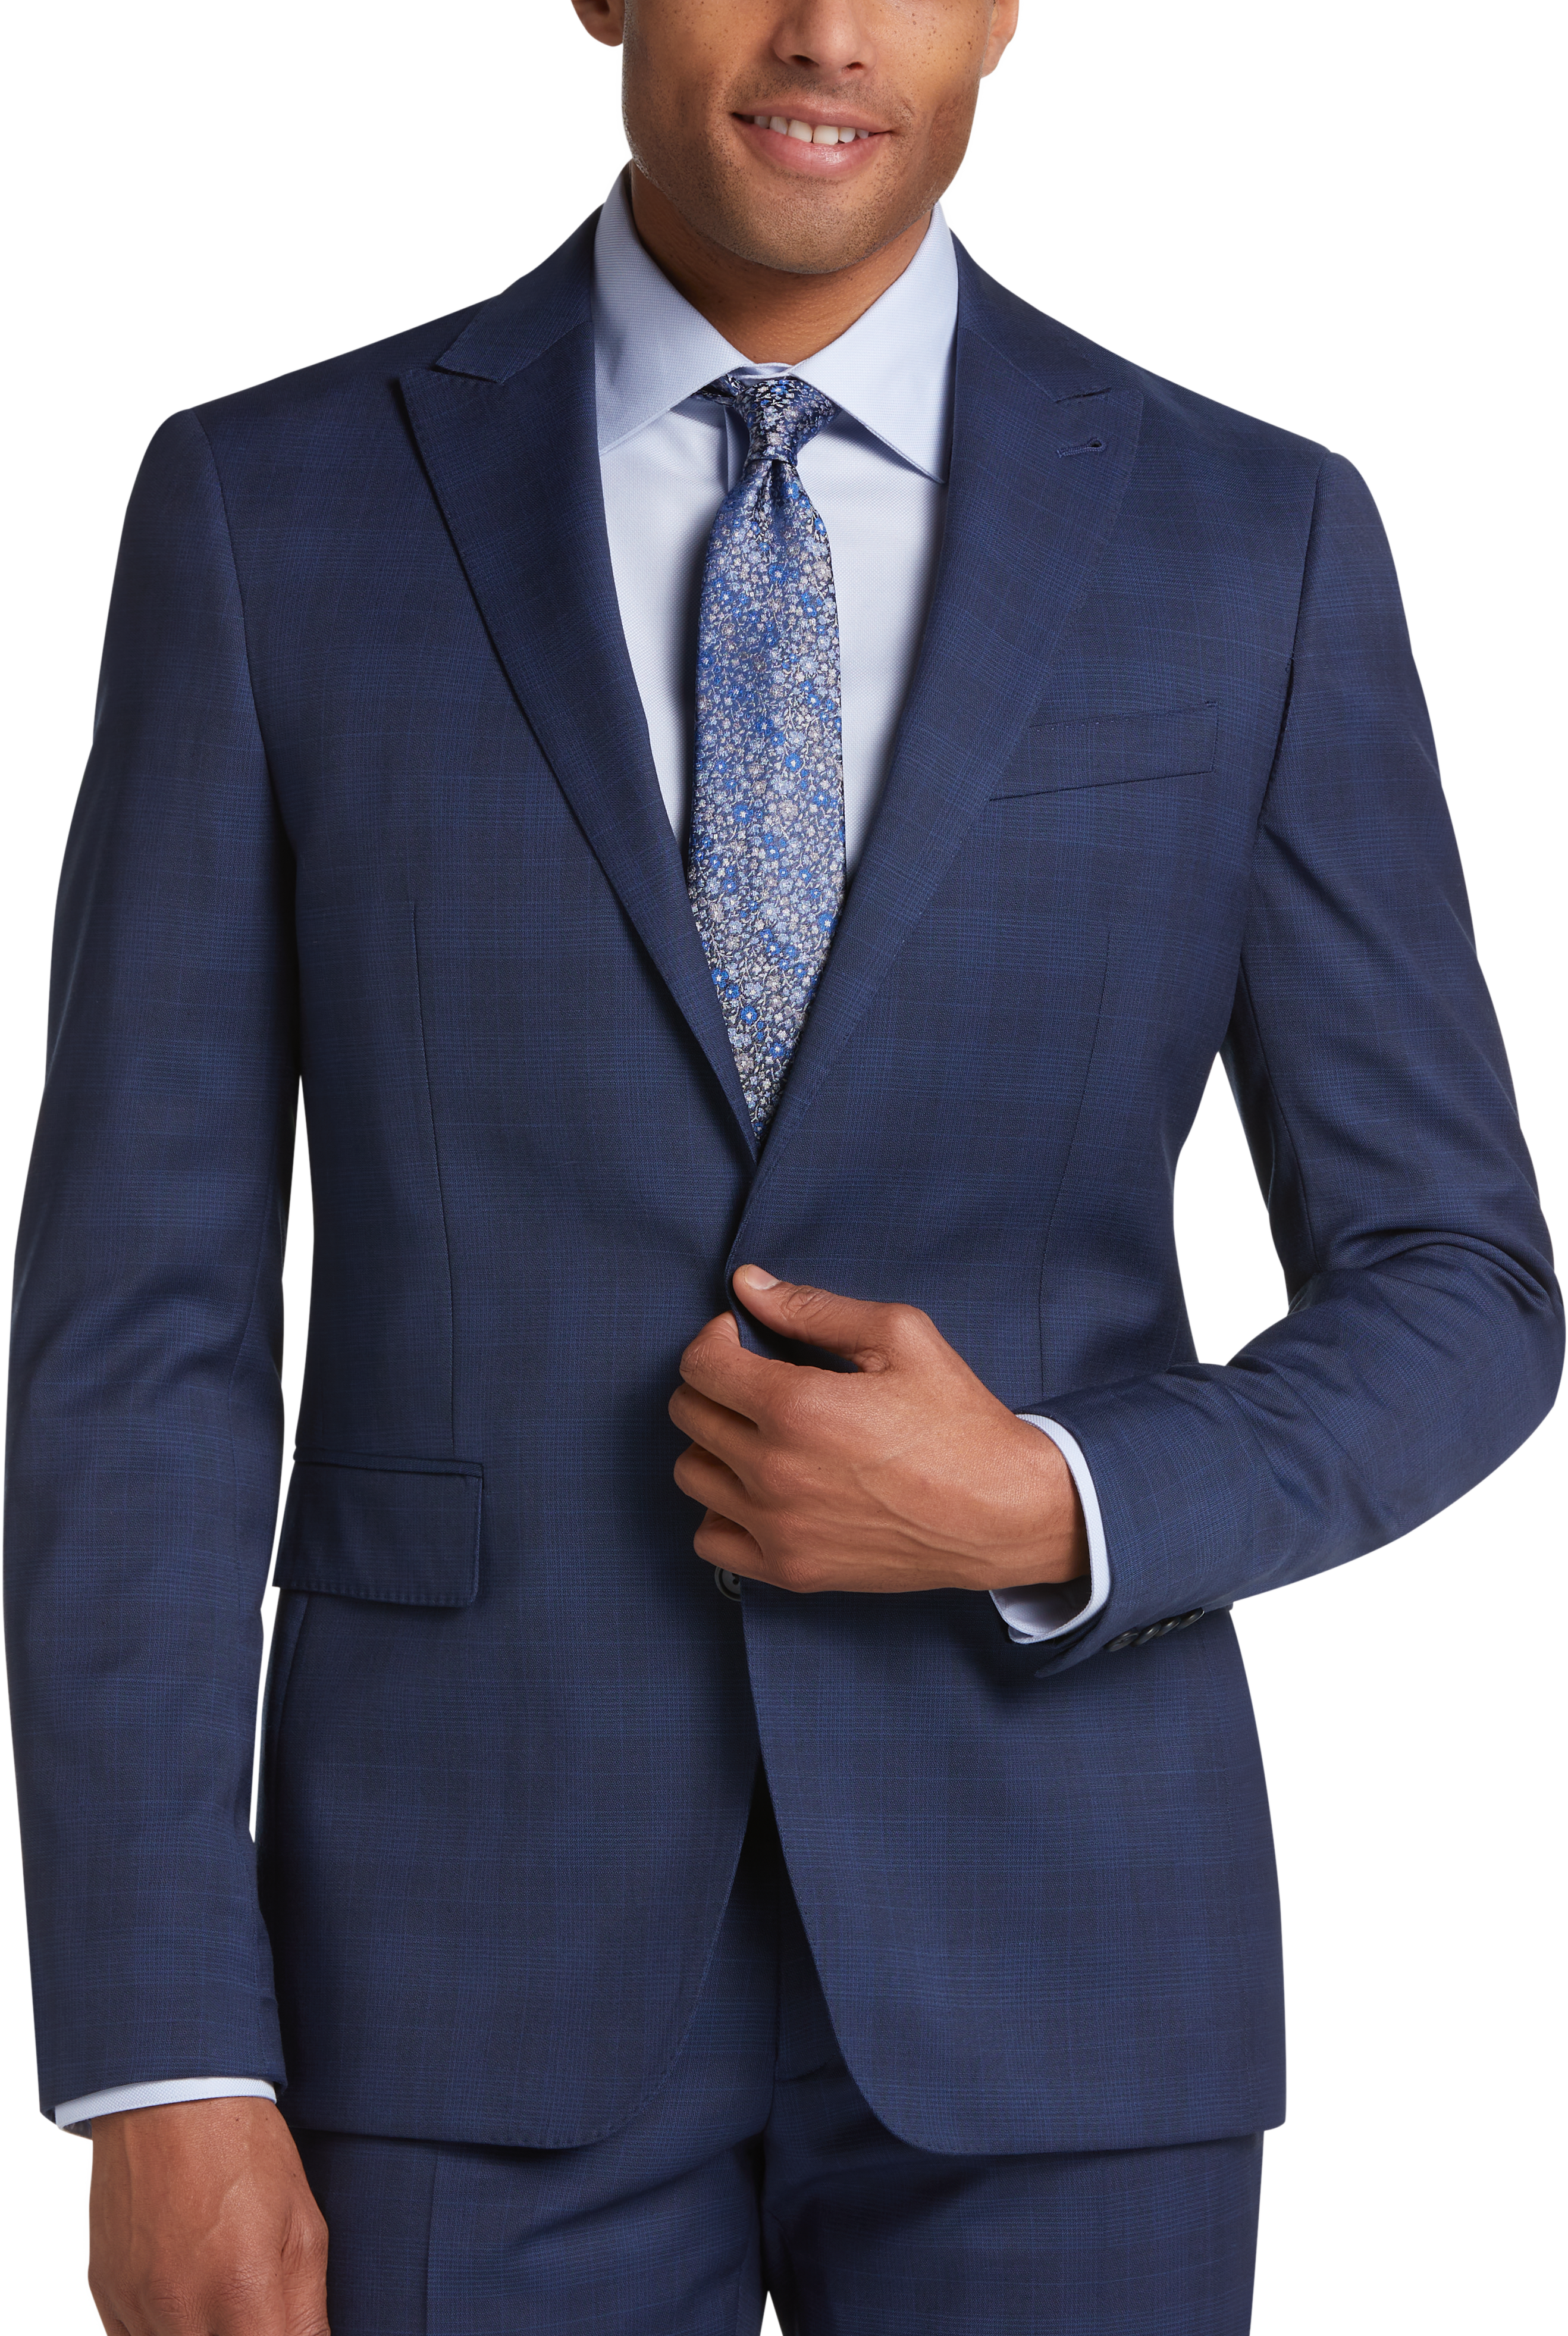 JOE Joseph Abboud Slim Fit Suit, Blue Plaid - Men's Sale | Men's Wearhouse